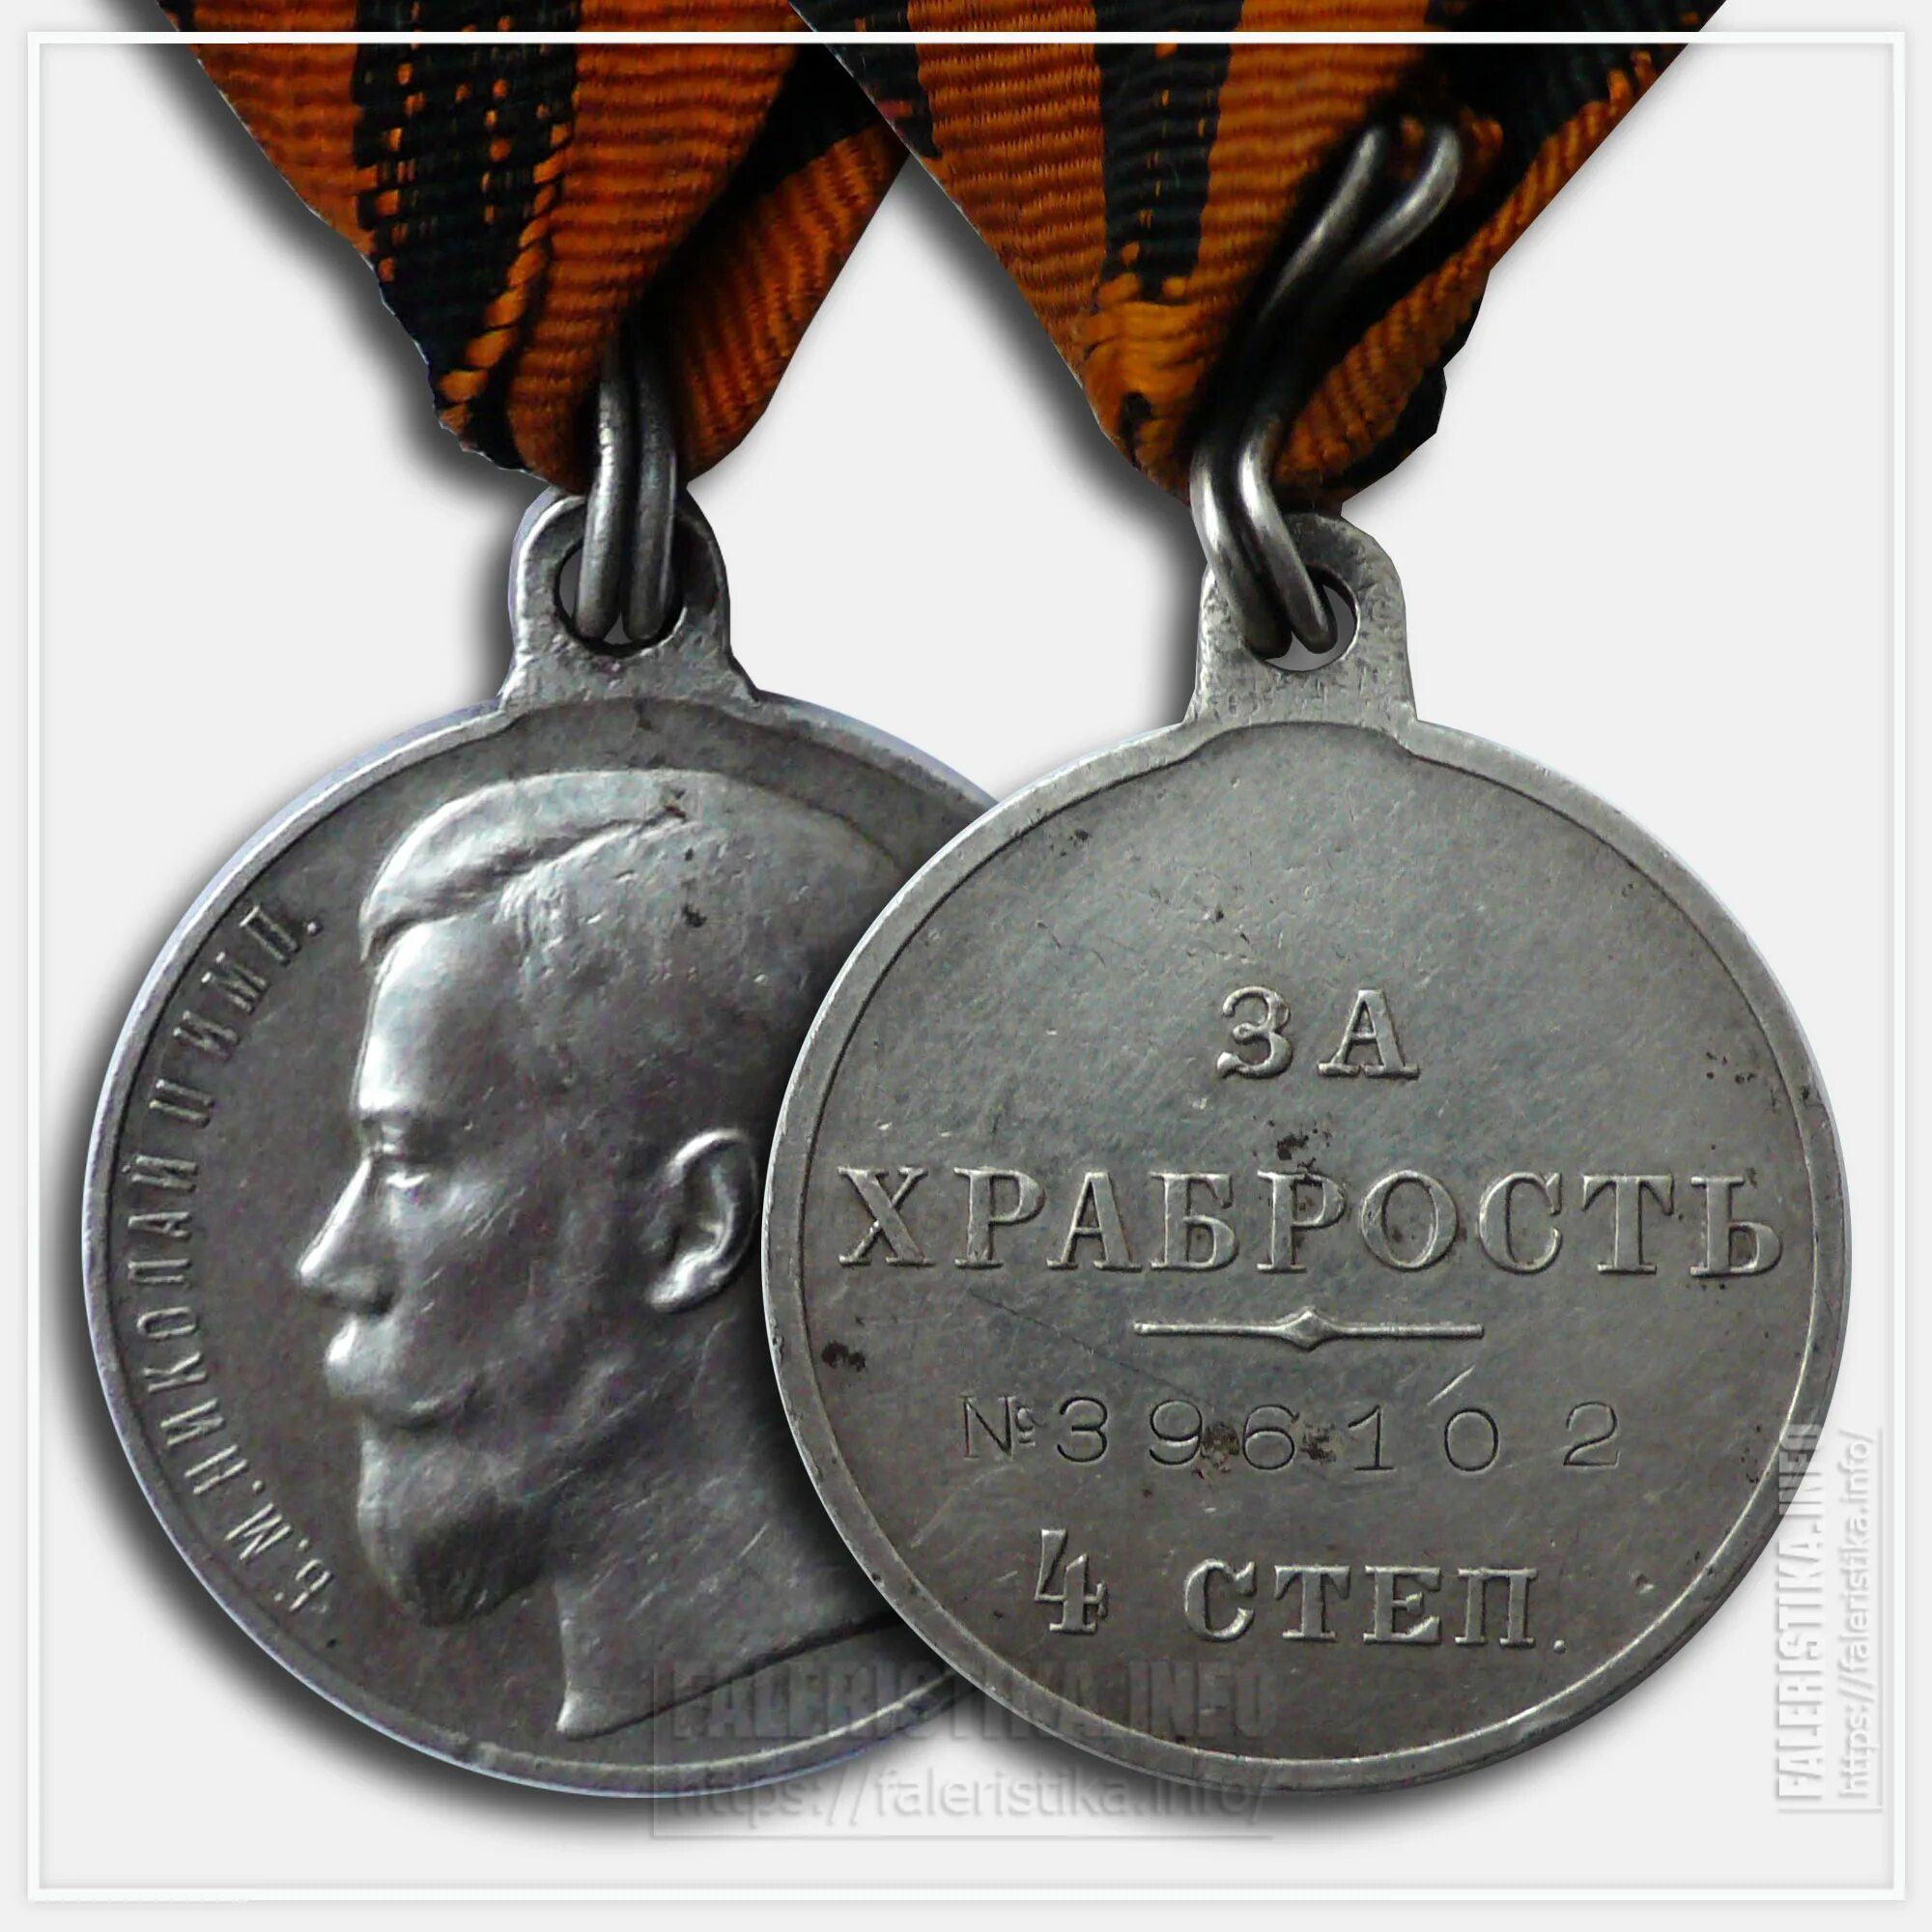 Золотая медаль Николая 2 за храбрость.